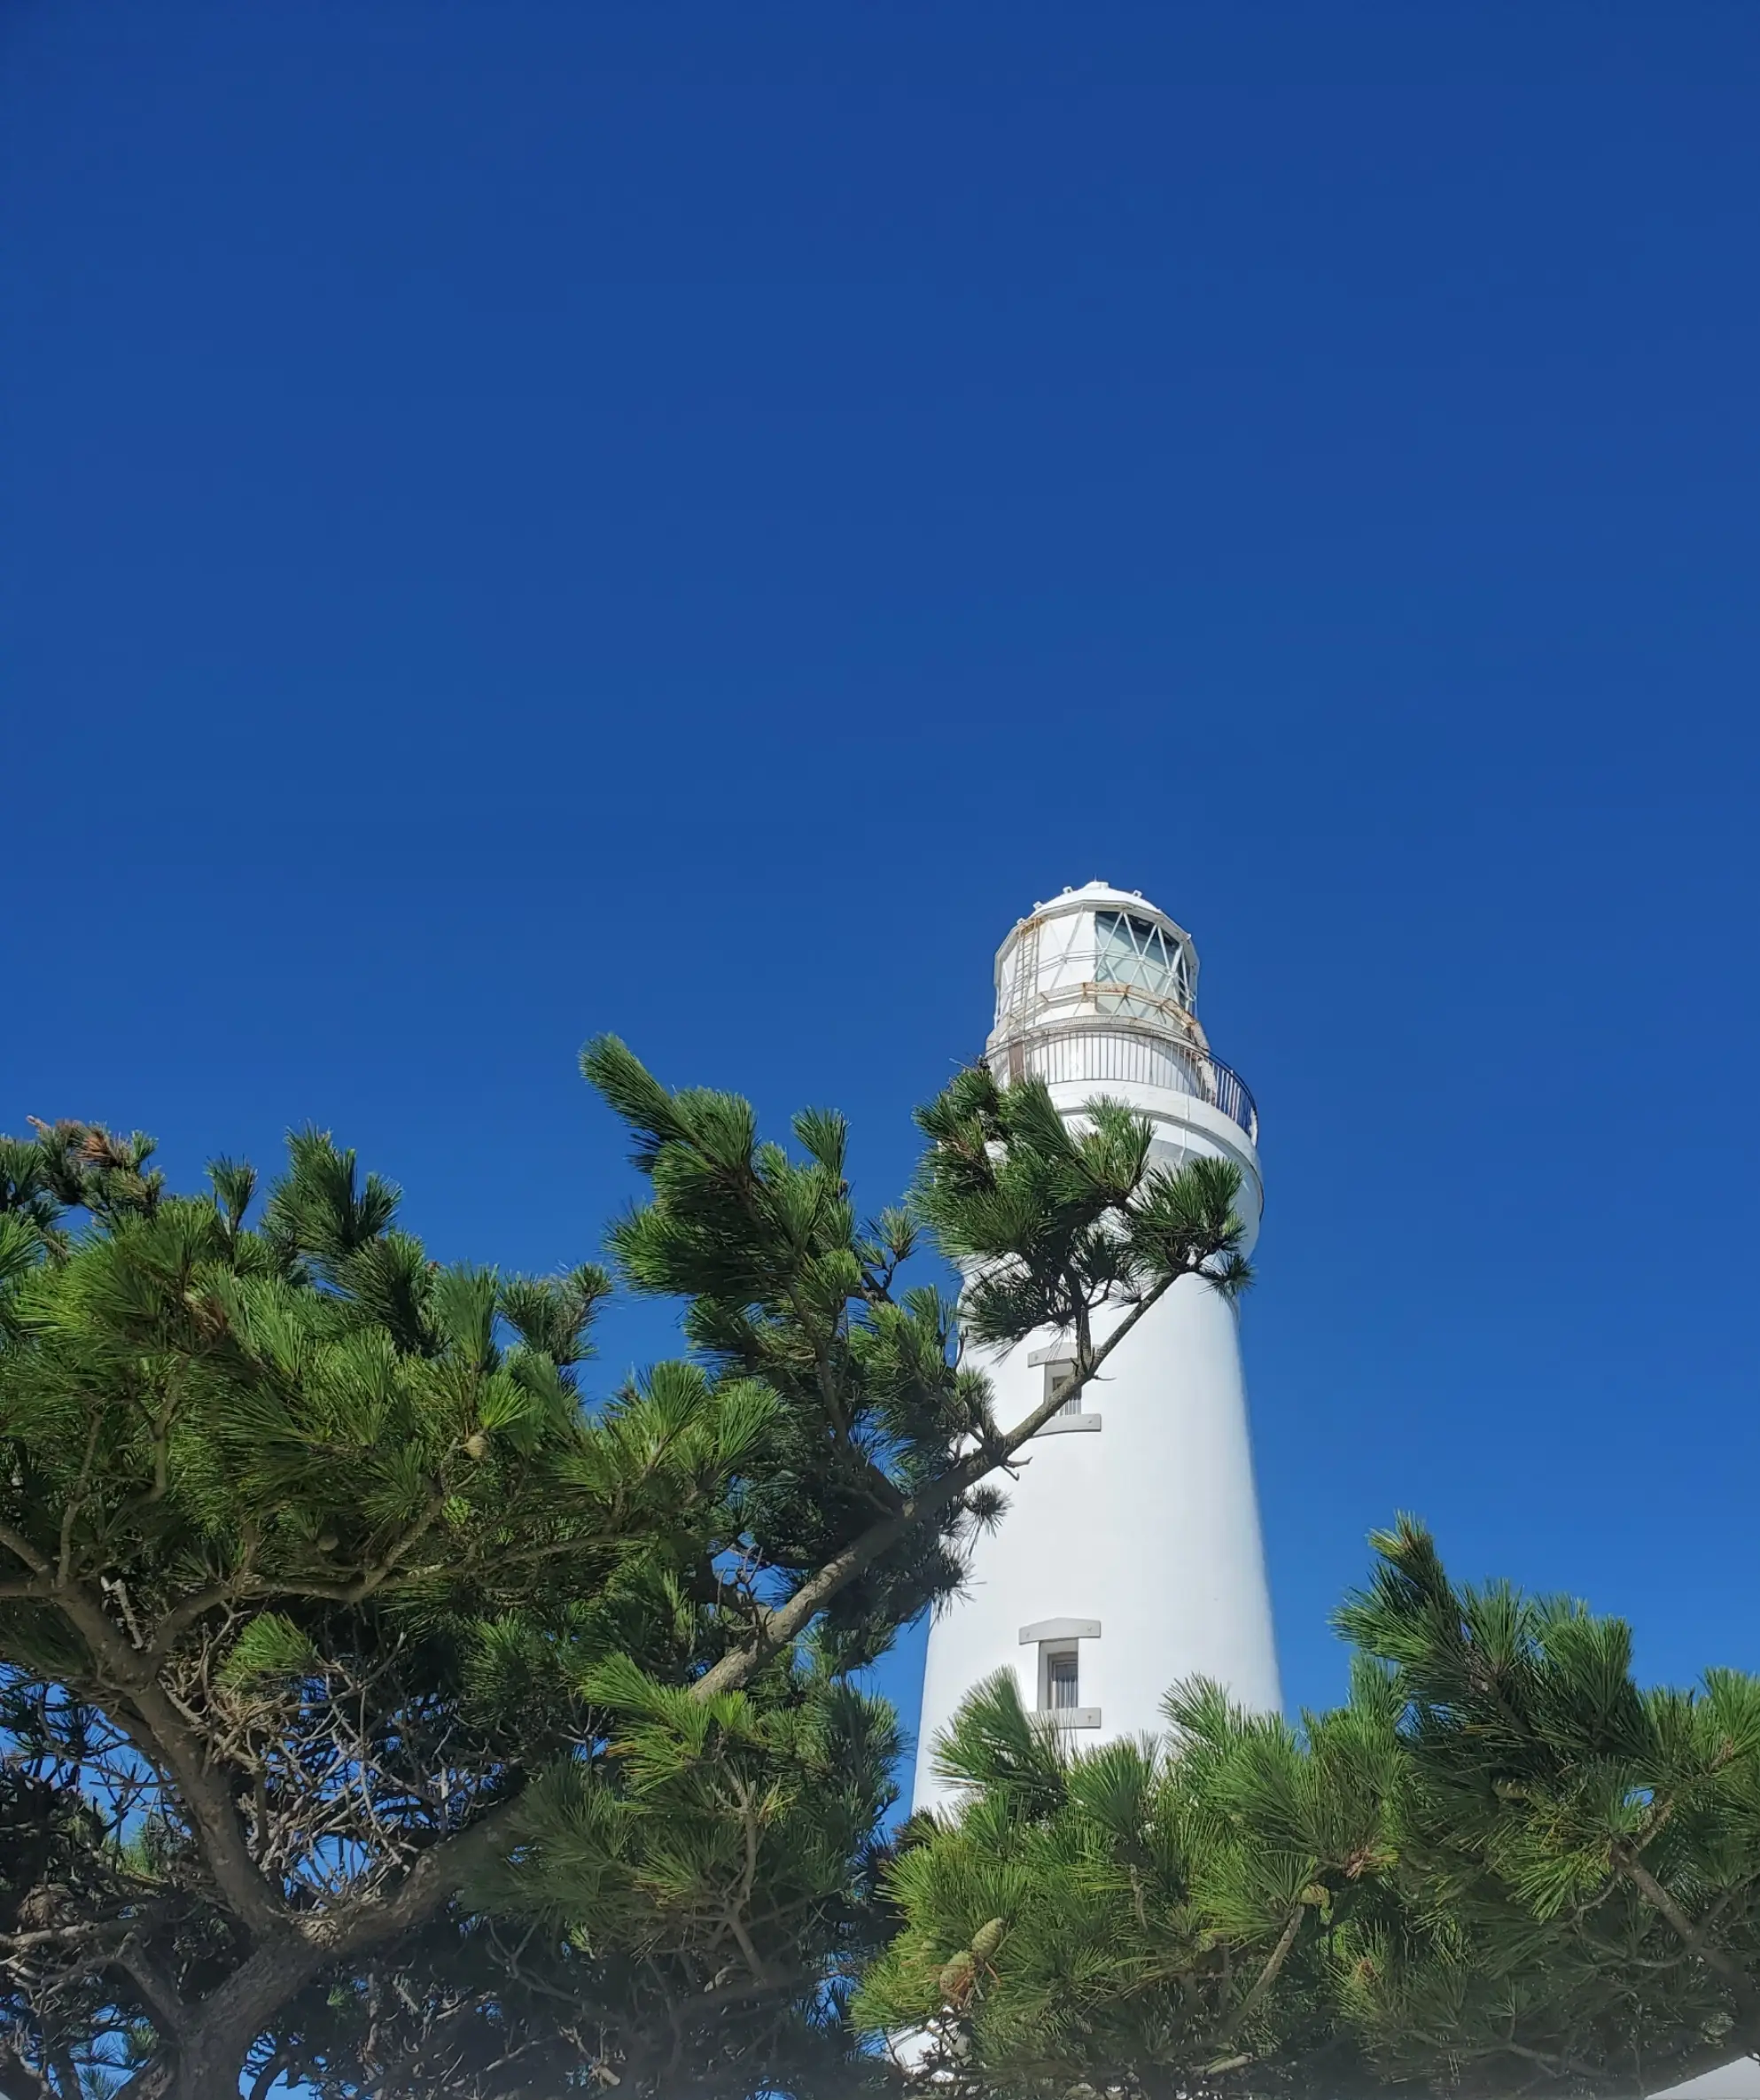 明治7年に初点灯した歴史ある犬吠埼灯台。上がるのは階段のみ！今回は下から眺めることに(^^;